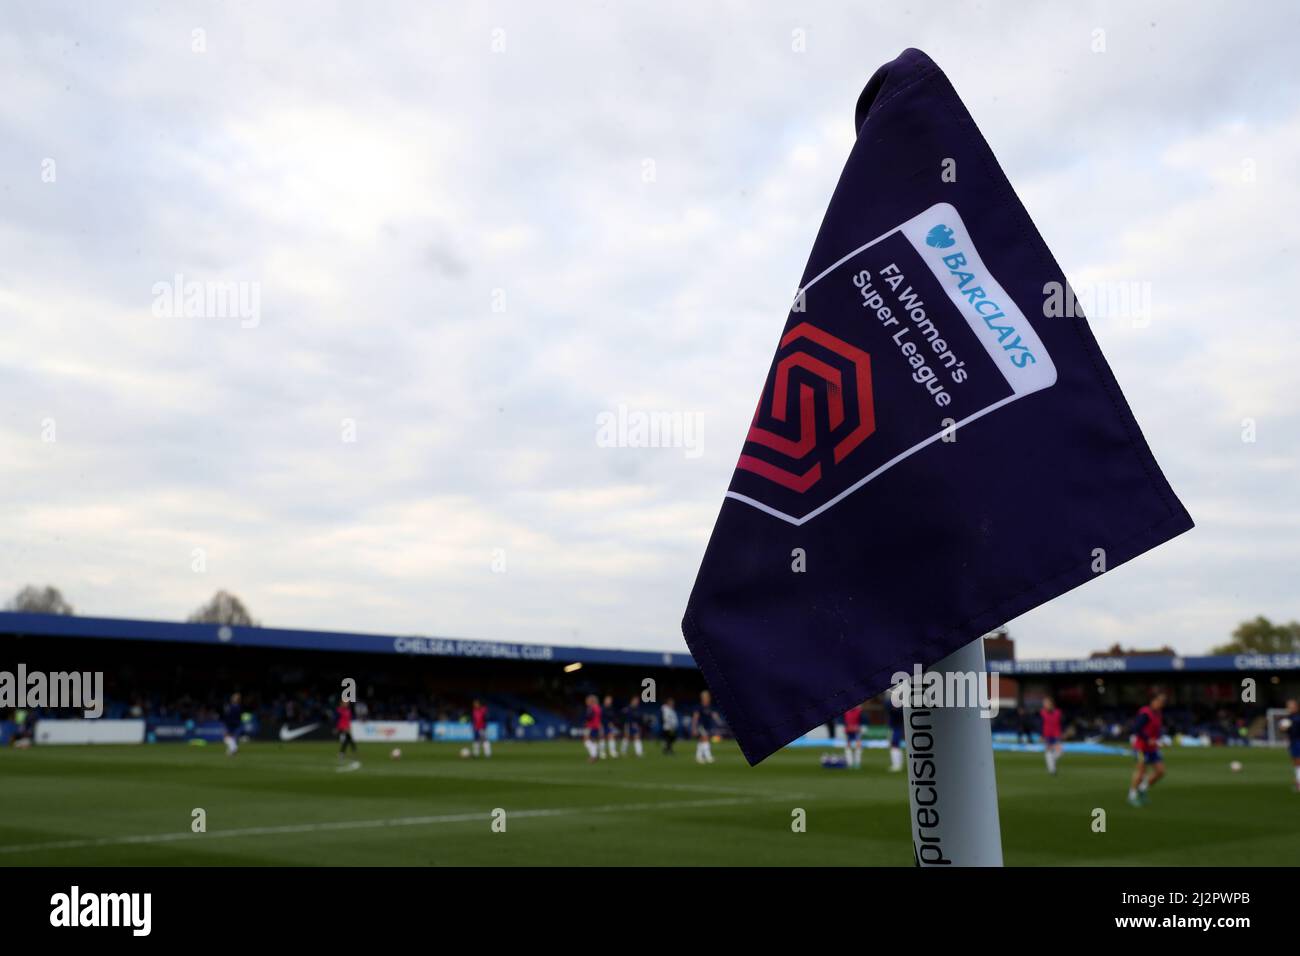 Una visione generale di una bandiera d'angolo di marca prima della partita della Barclays fa Women's Super League a Kingsmeadow, Londra. Data foto: Domenica 3 aprile 2022. Foto Stock